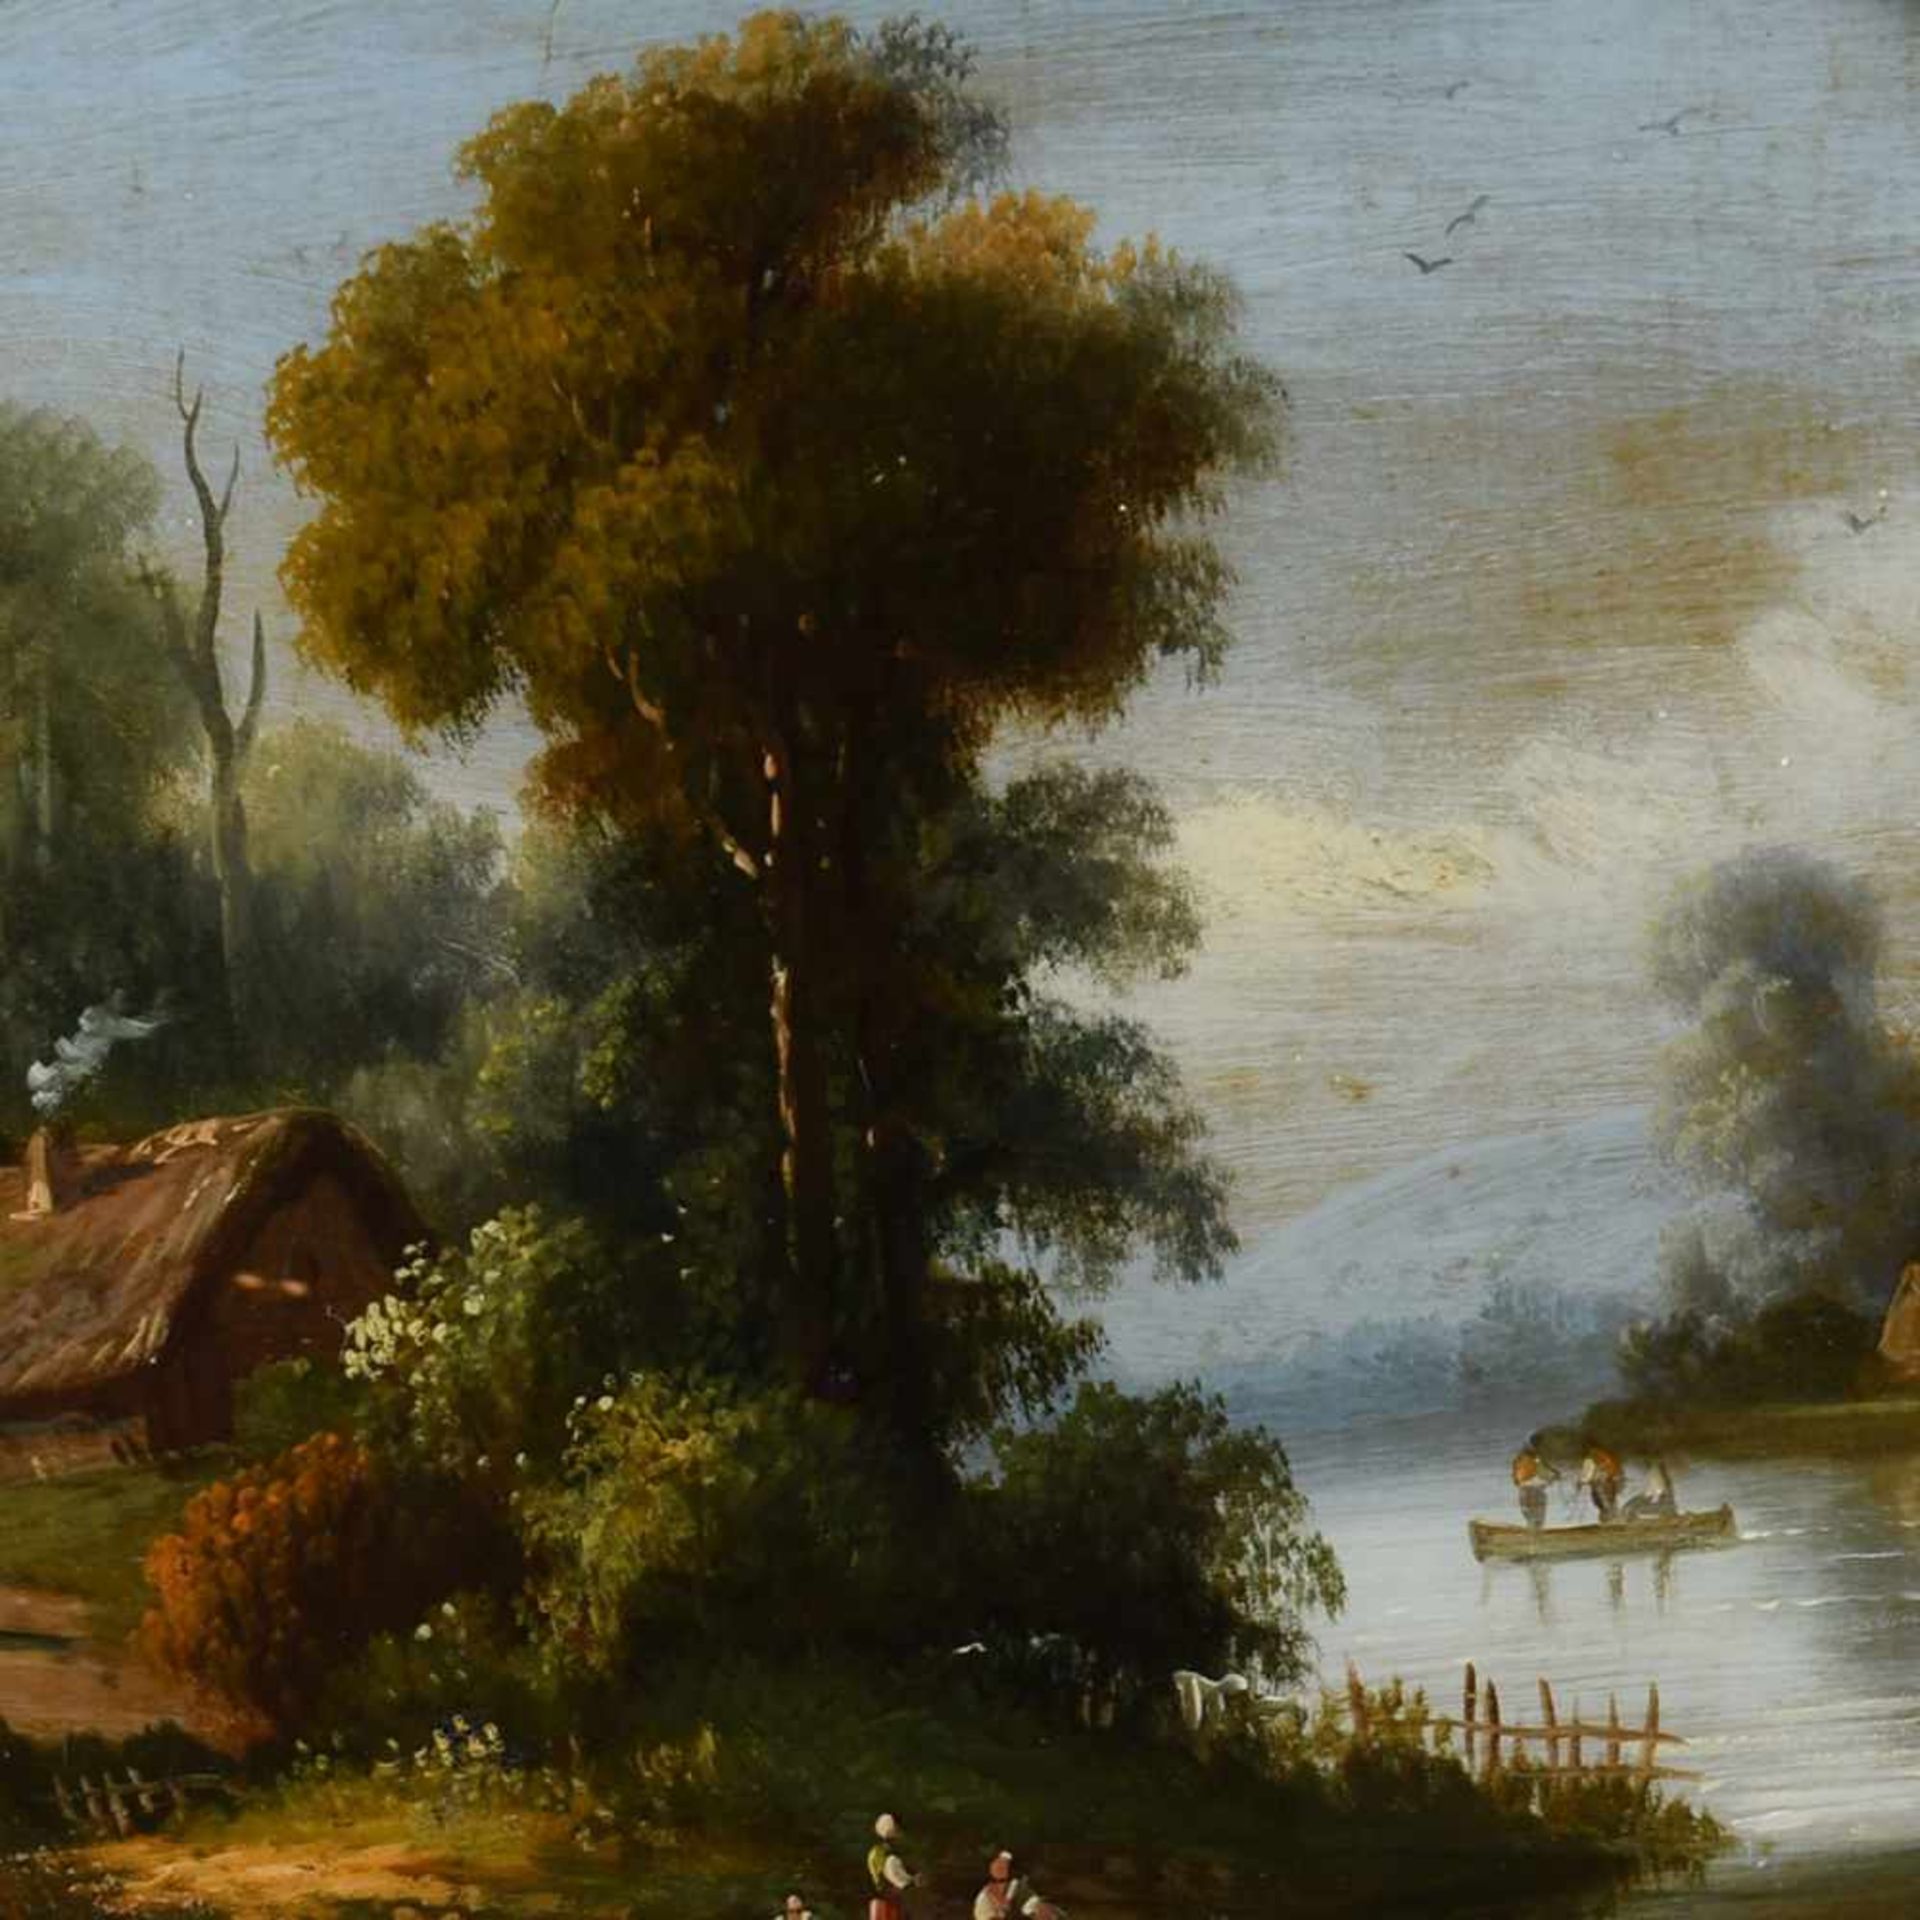 Hinterglasmalerei Darstellung einer romantischen Flusslandschaft mit Architektur- und